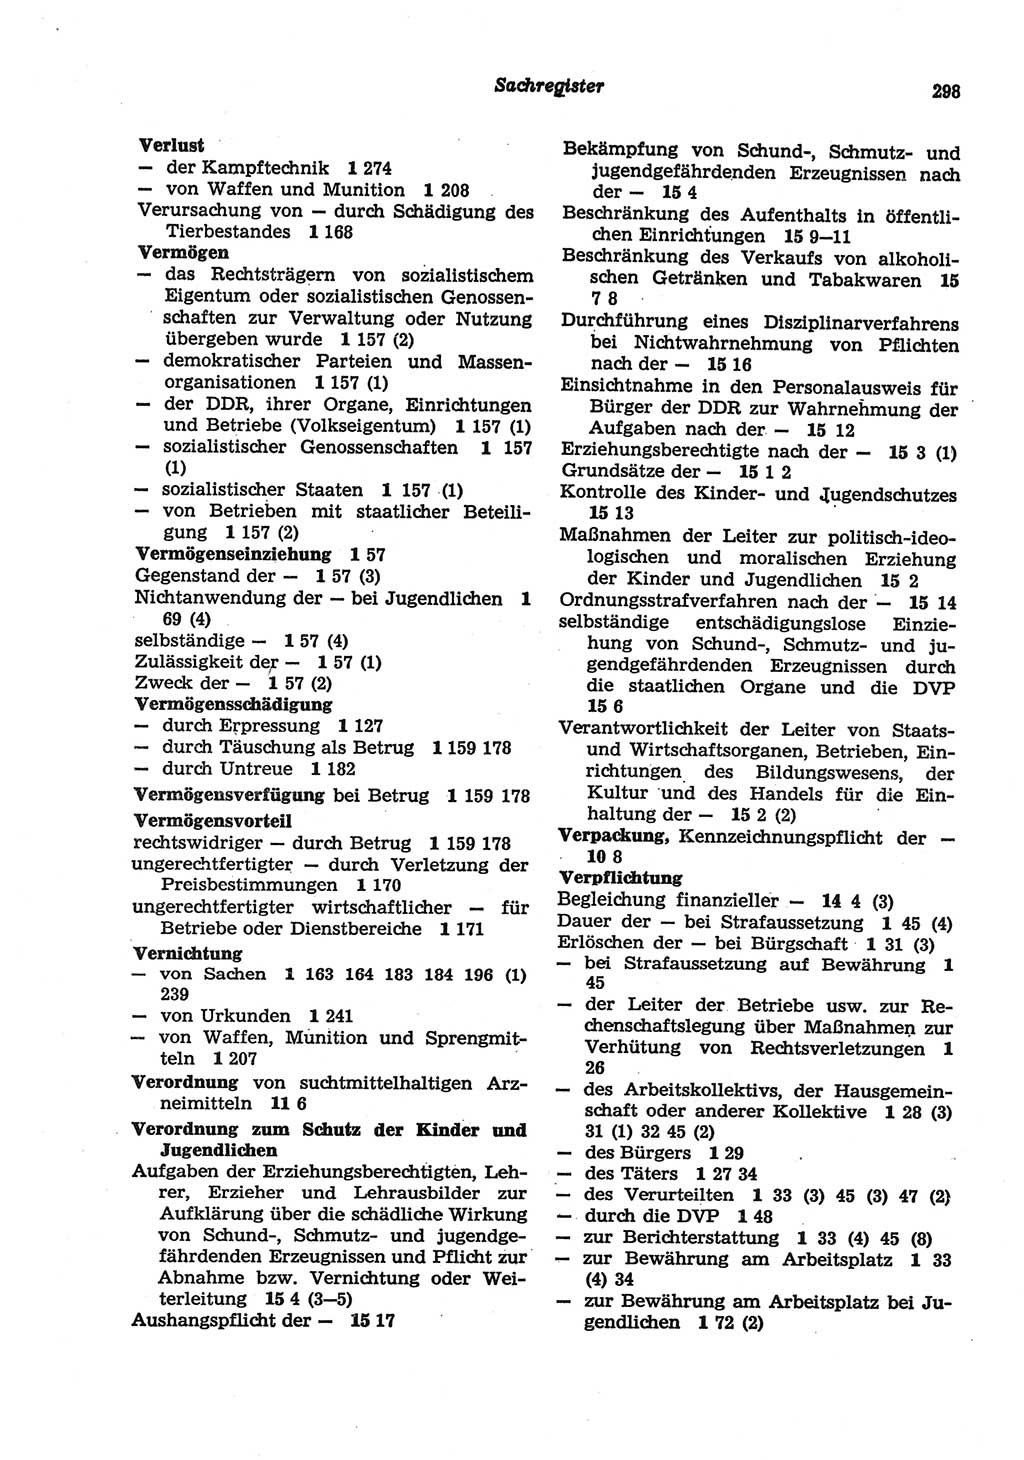 Strafgesetzbuch (StGB) der Deutschen Demokratischen Republik (DDR) und angrenzende Gesetze und Bestimmungen 1977, Seite 298 (StGB DDR Ges. Best. 1977, S. 298)